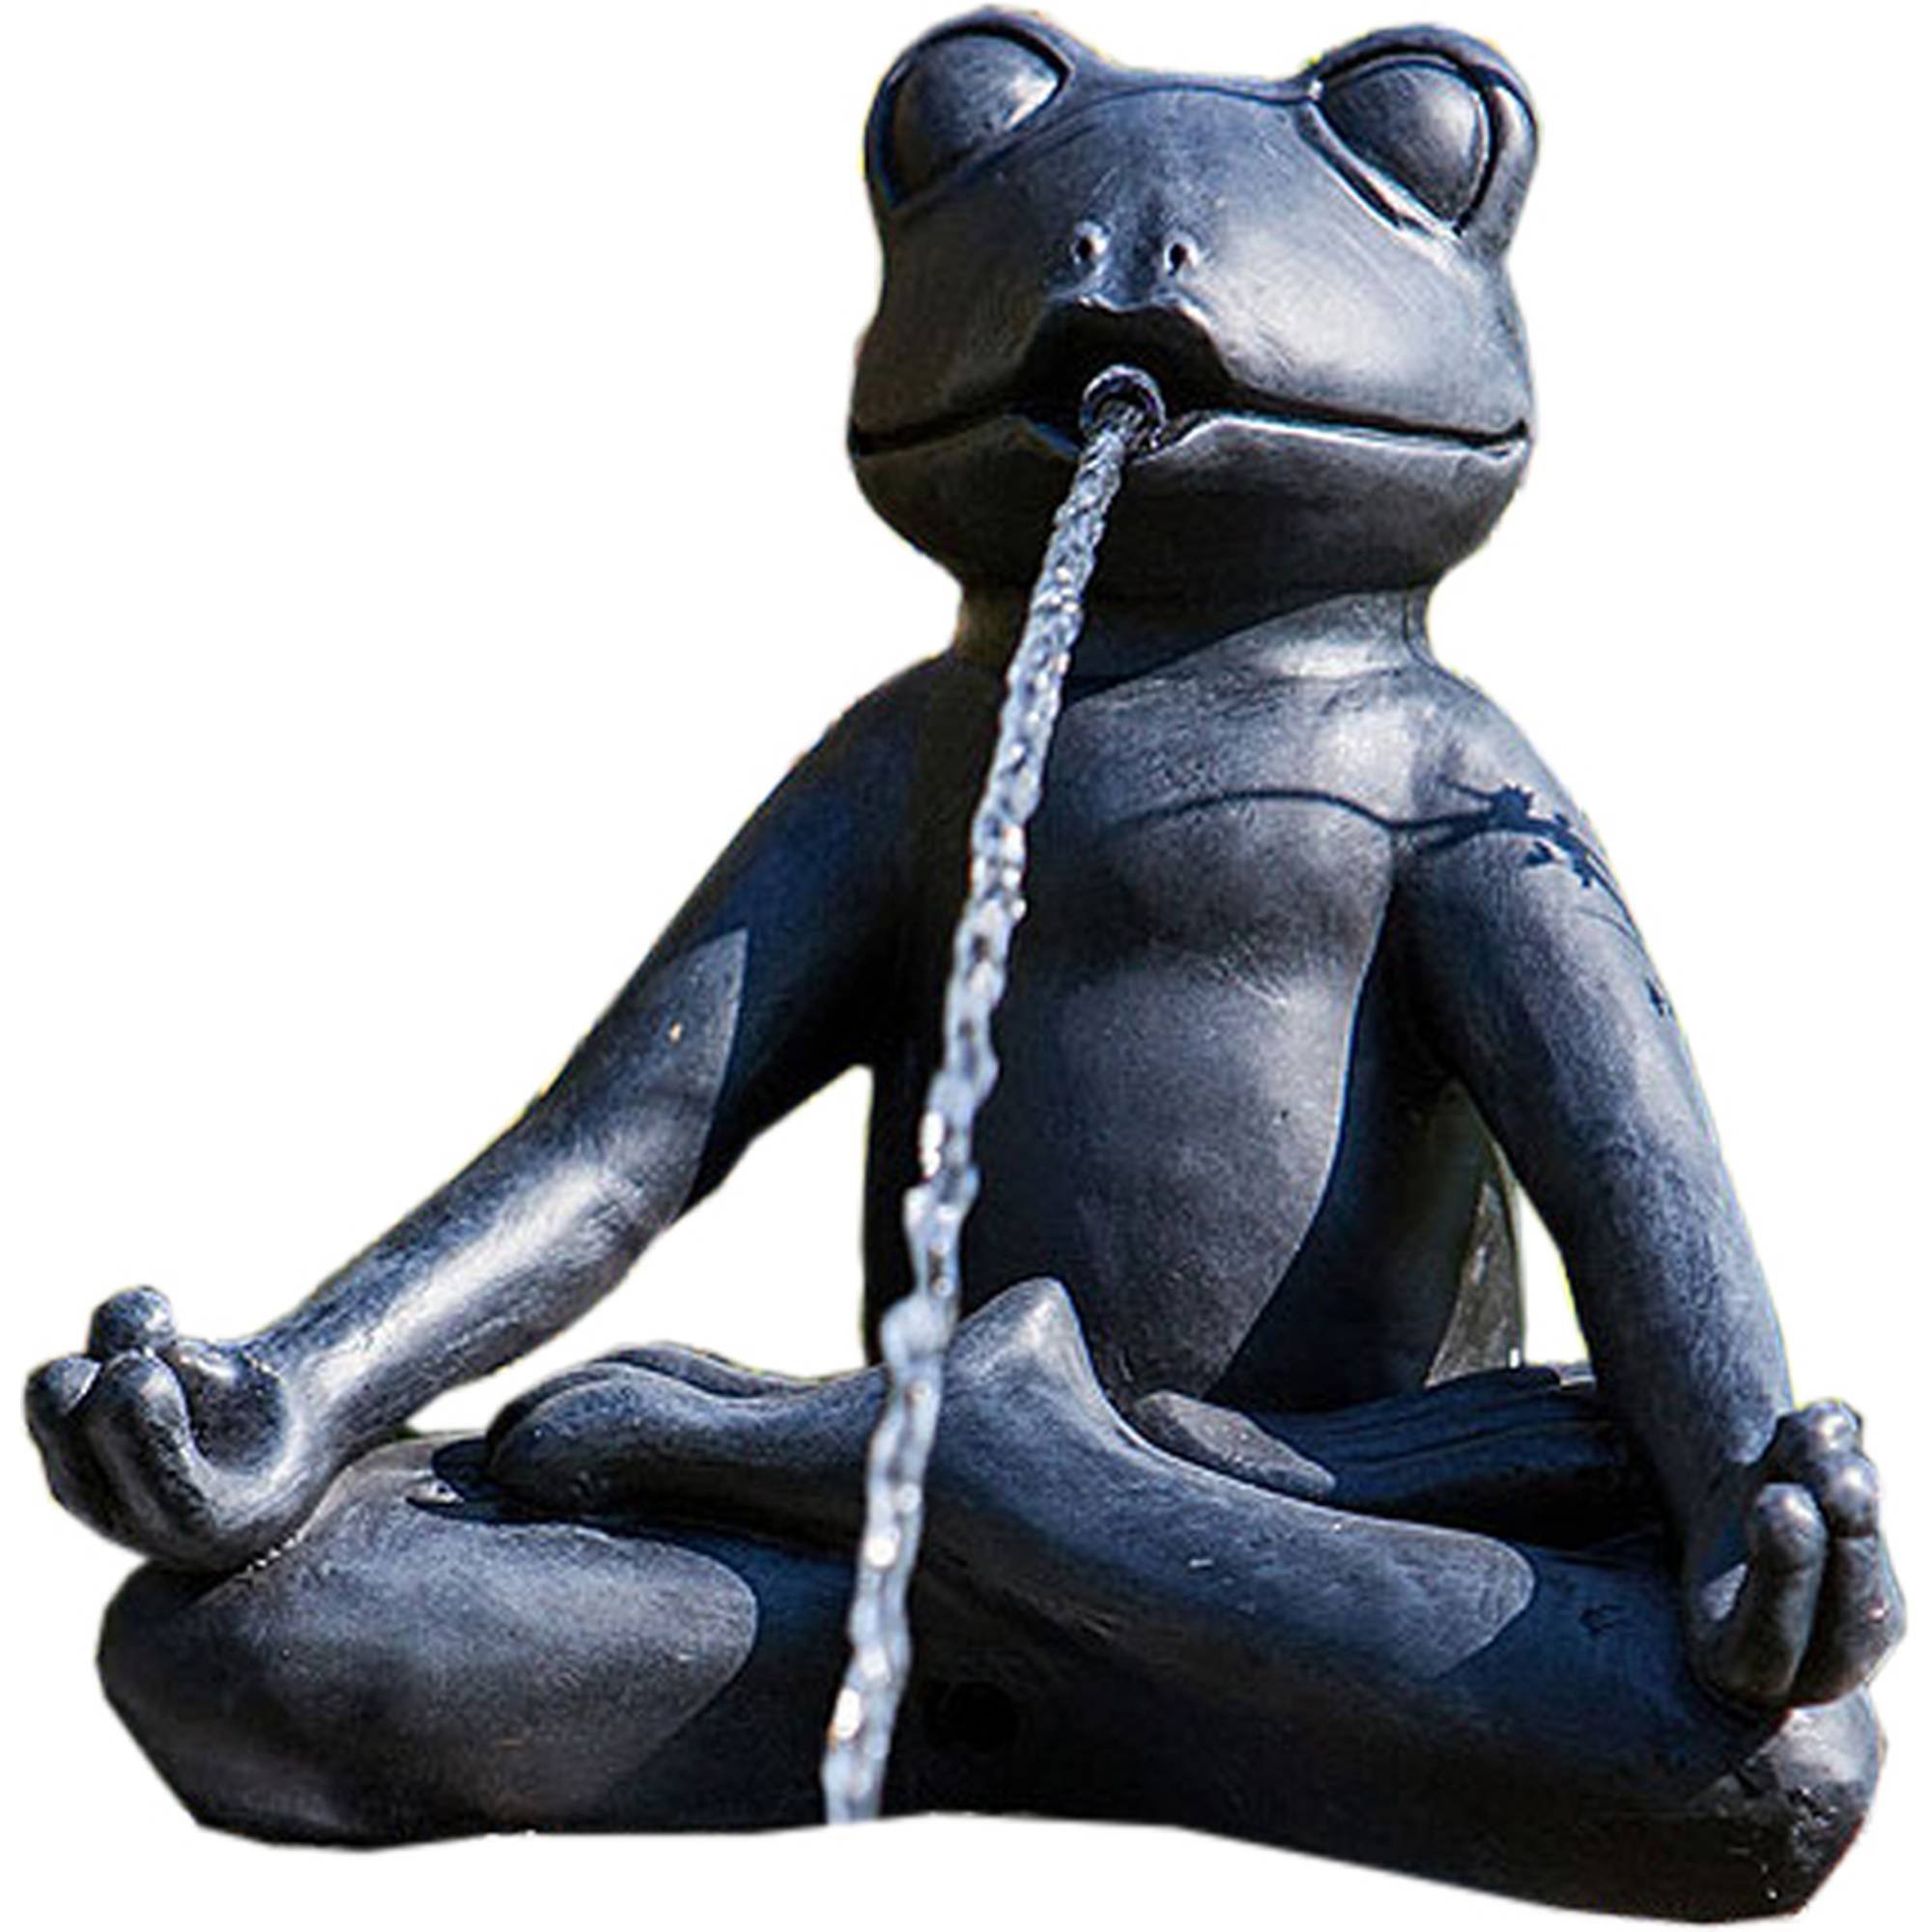 Teichfigur Yoga-Frosch im Schneidersitz meditierend